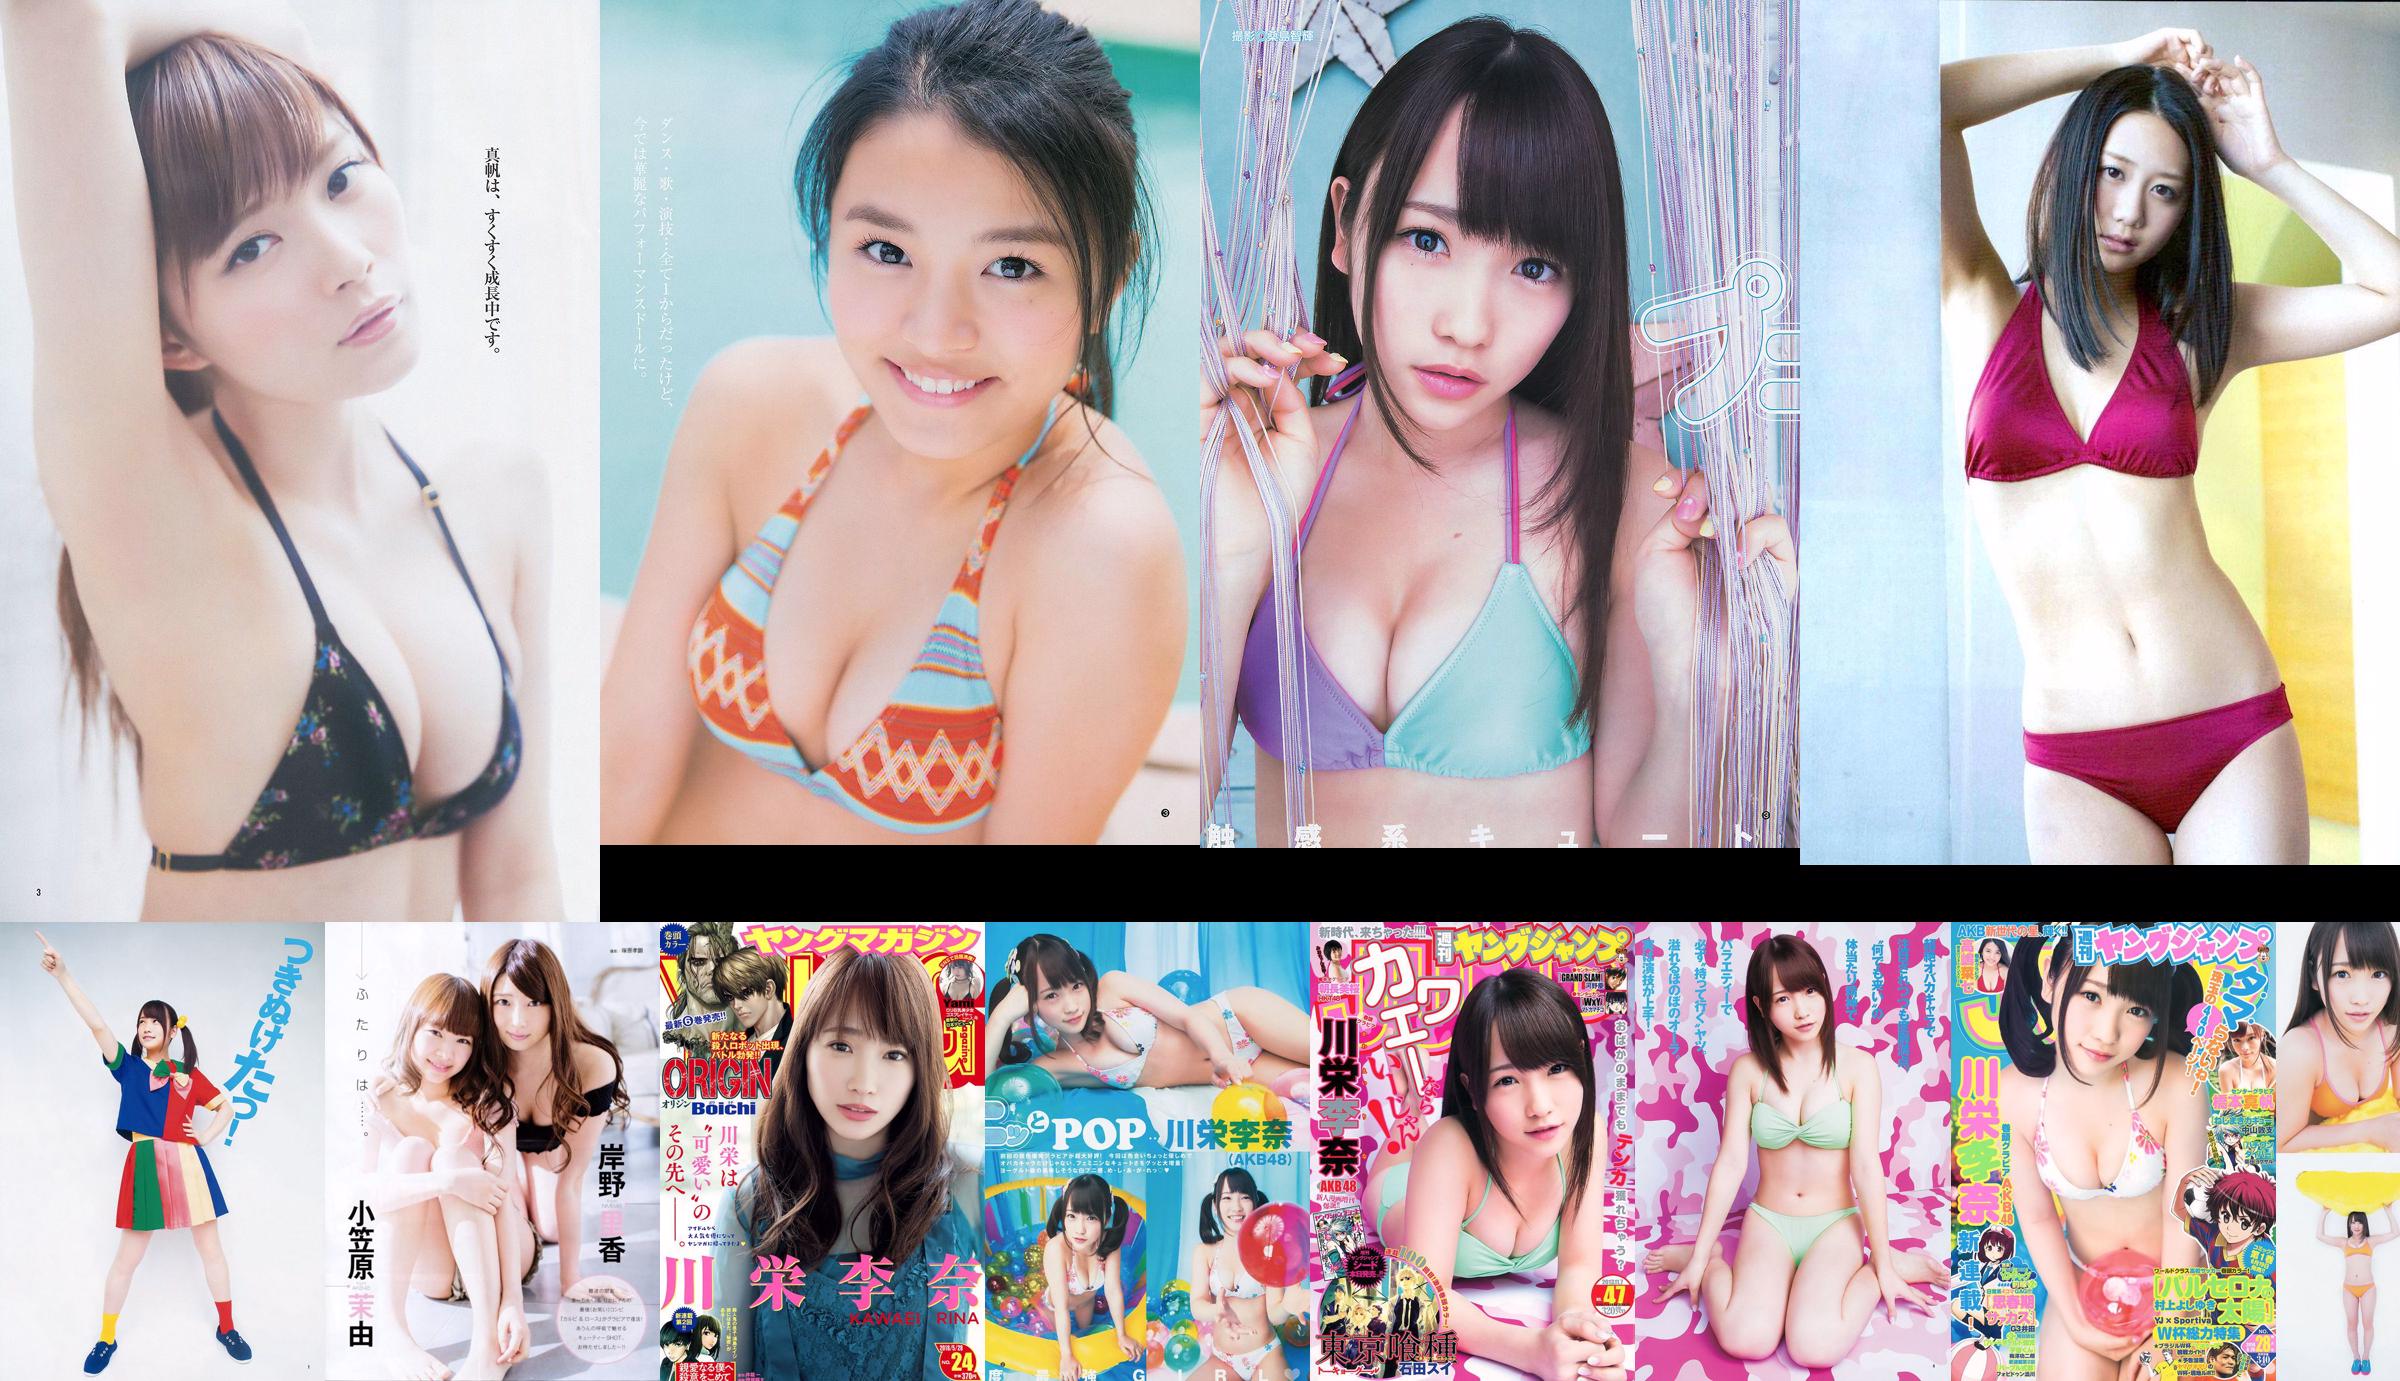 [ENTAME] Kawaei Rina Furuhata Naka e Kishino Rika junho de 2014 Photo Magazine No.afdb80 Página 3